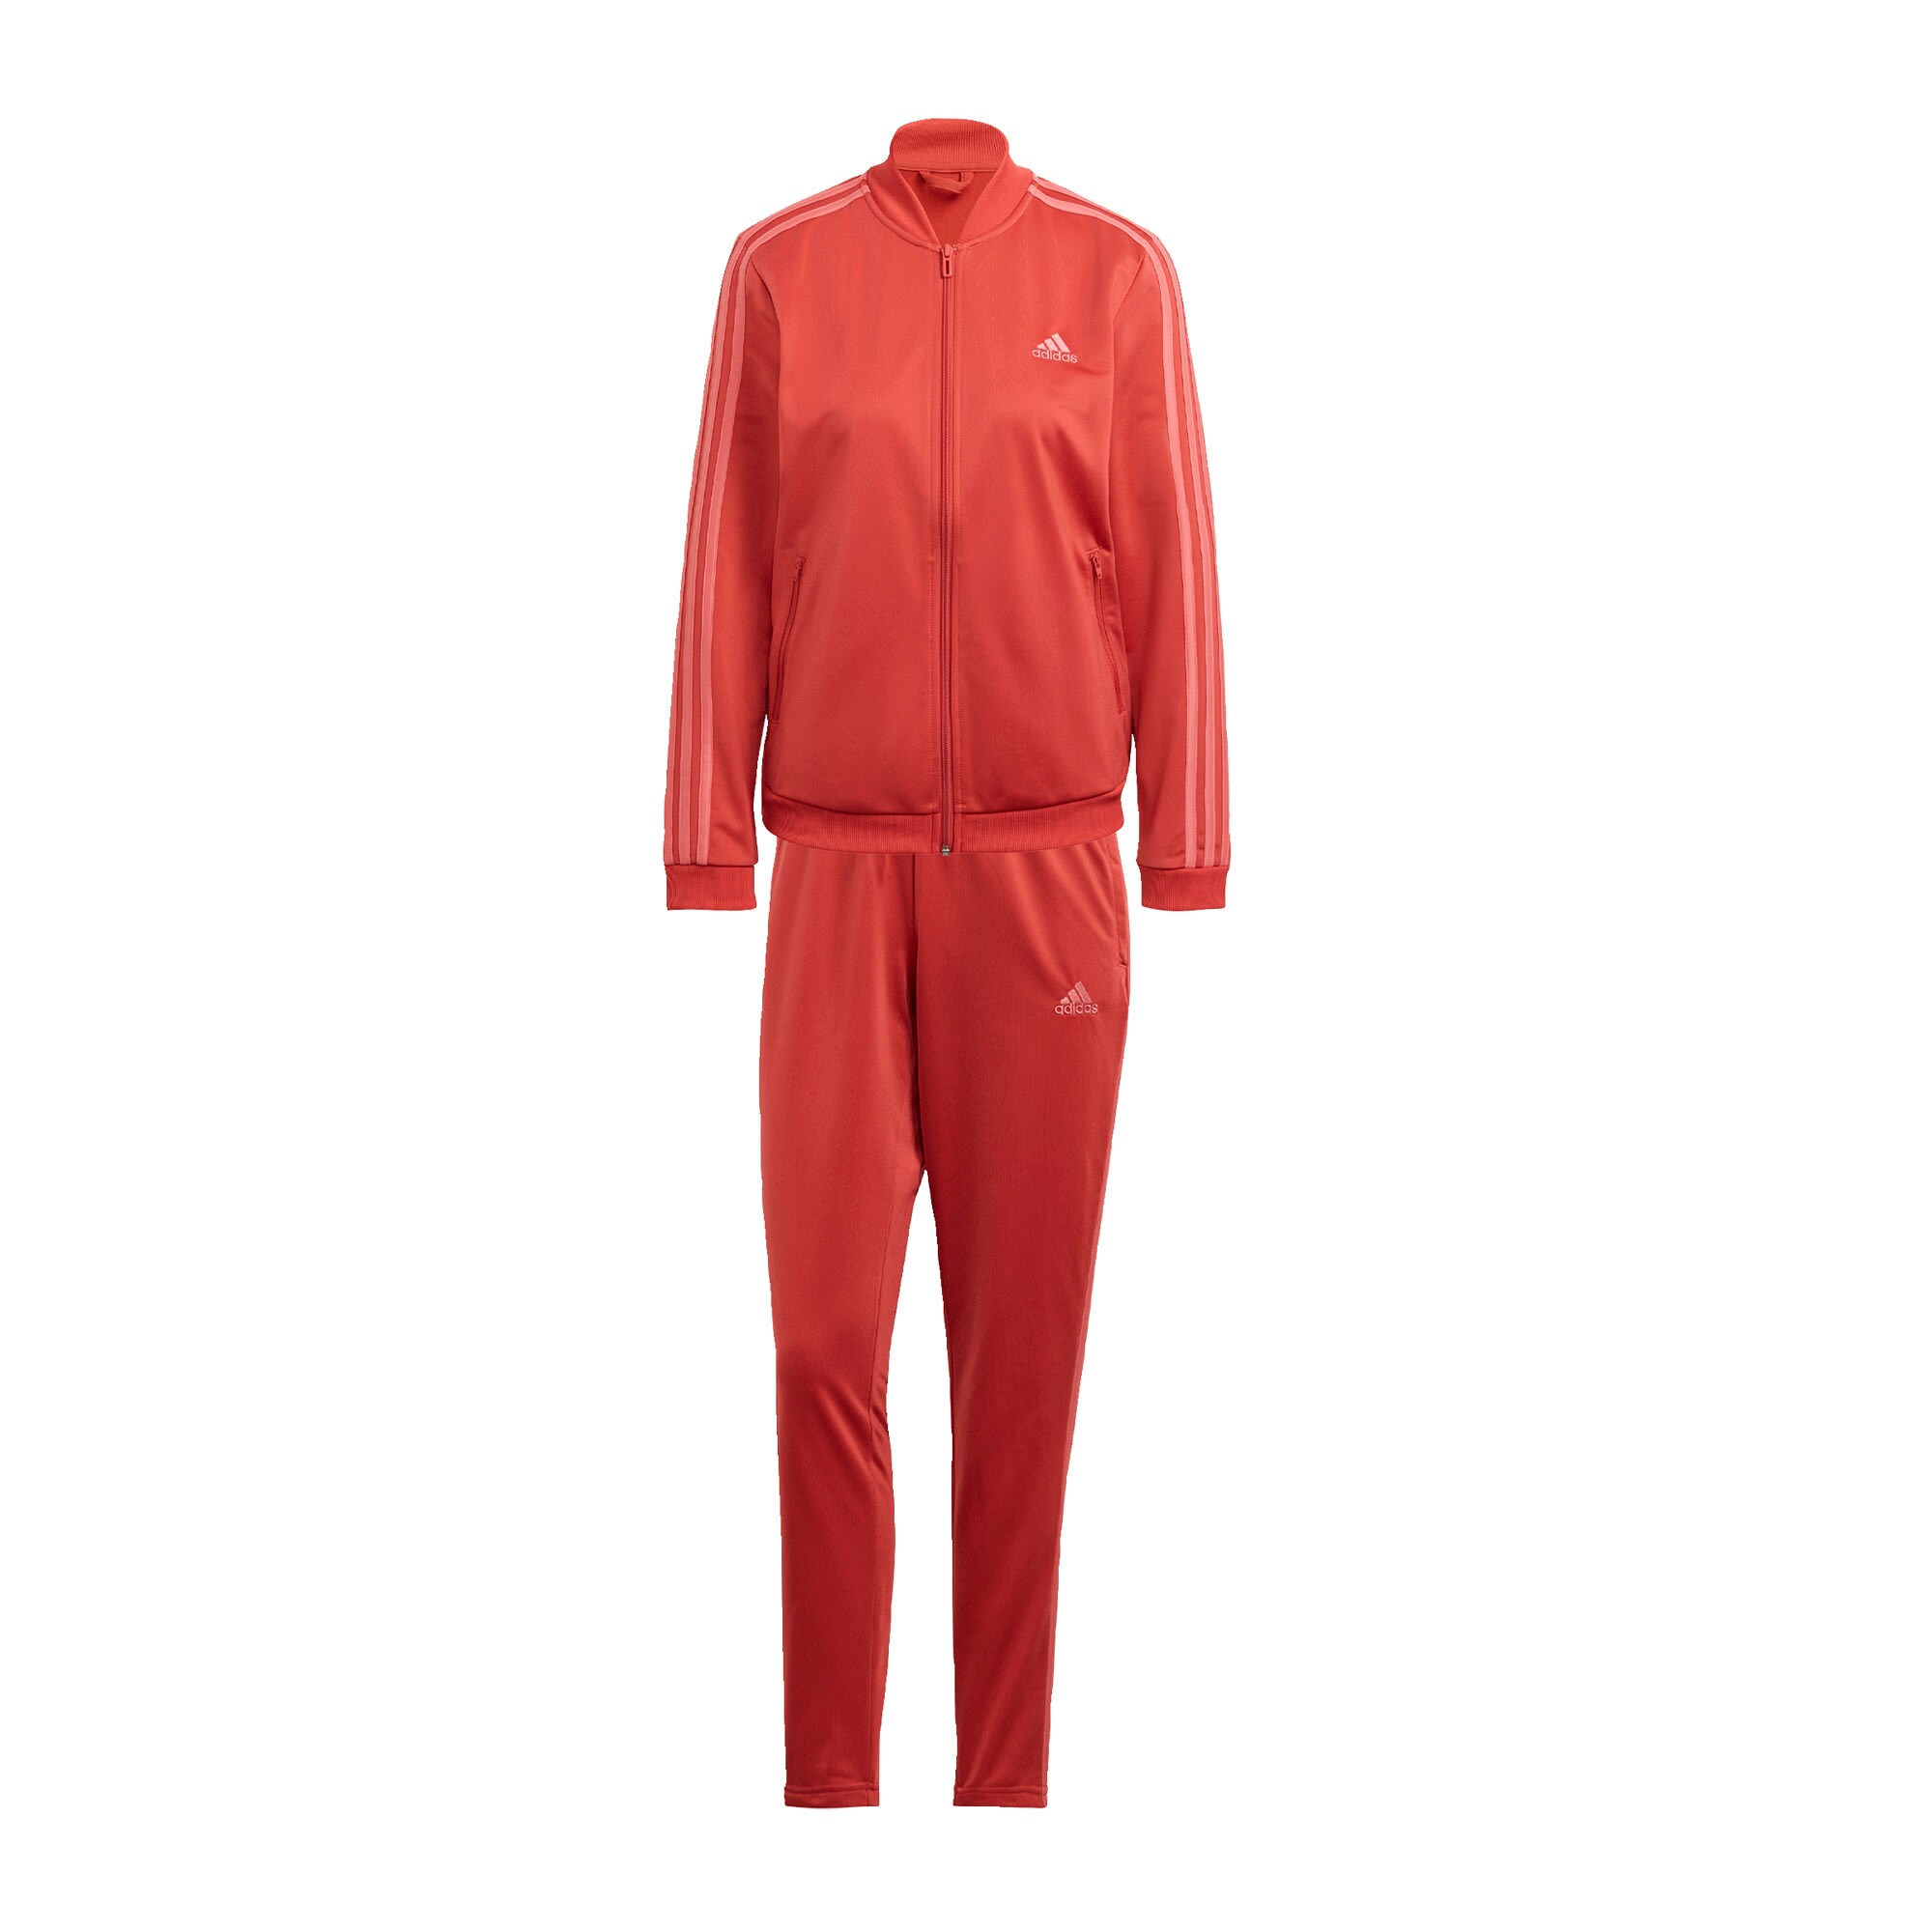 ADIDAS PERFORMANCE Sportinis kostiumas  raudona / ryškiai rožinė spalva